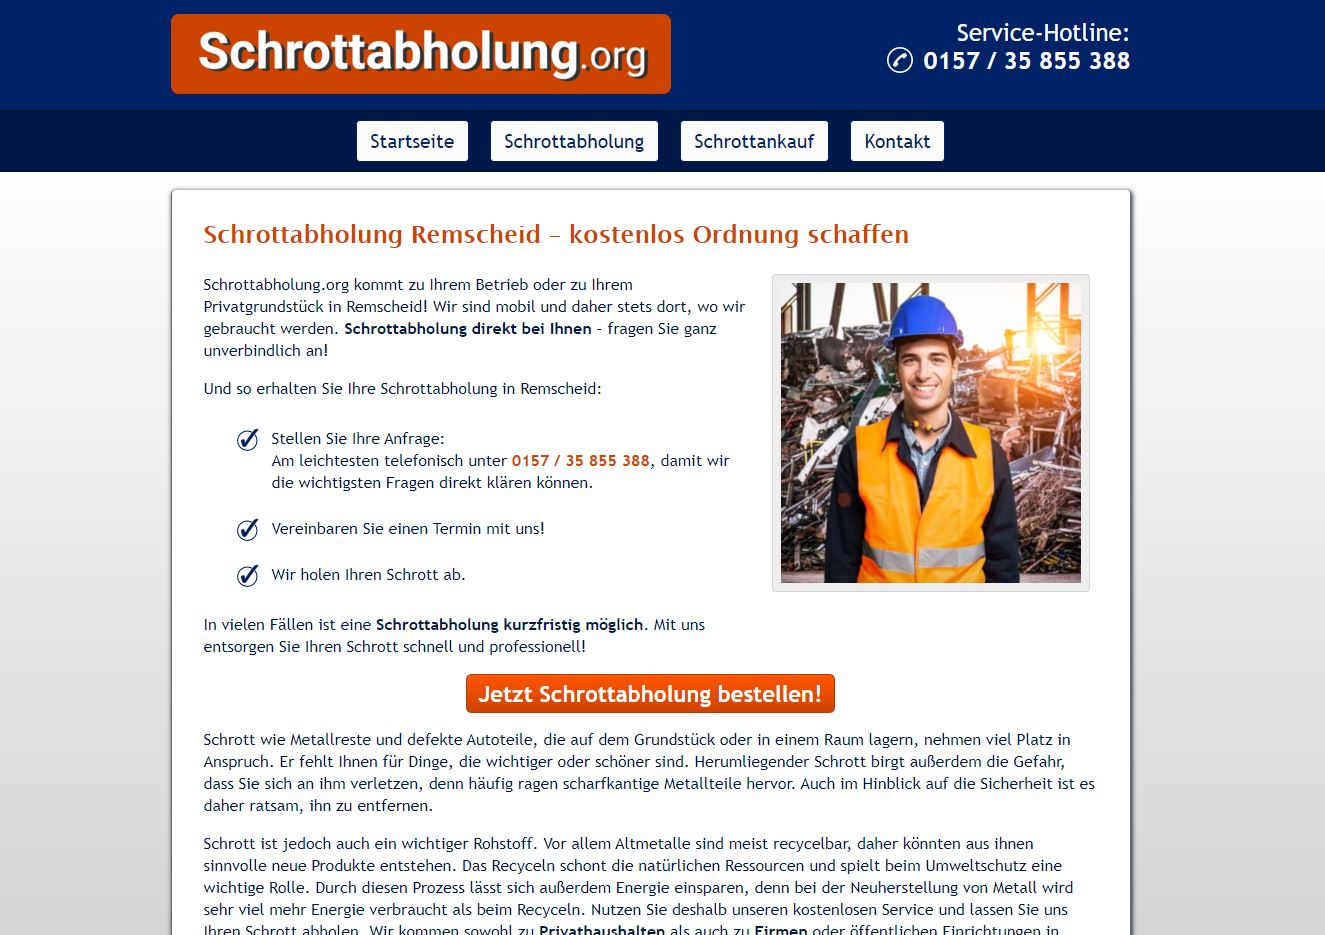 Schrott-Recycling: so wichtig ist der Schutz von Ressourcen Schrottabholung in Remscheid